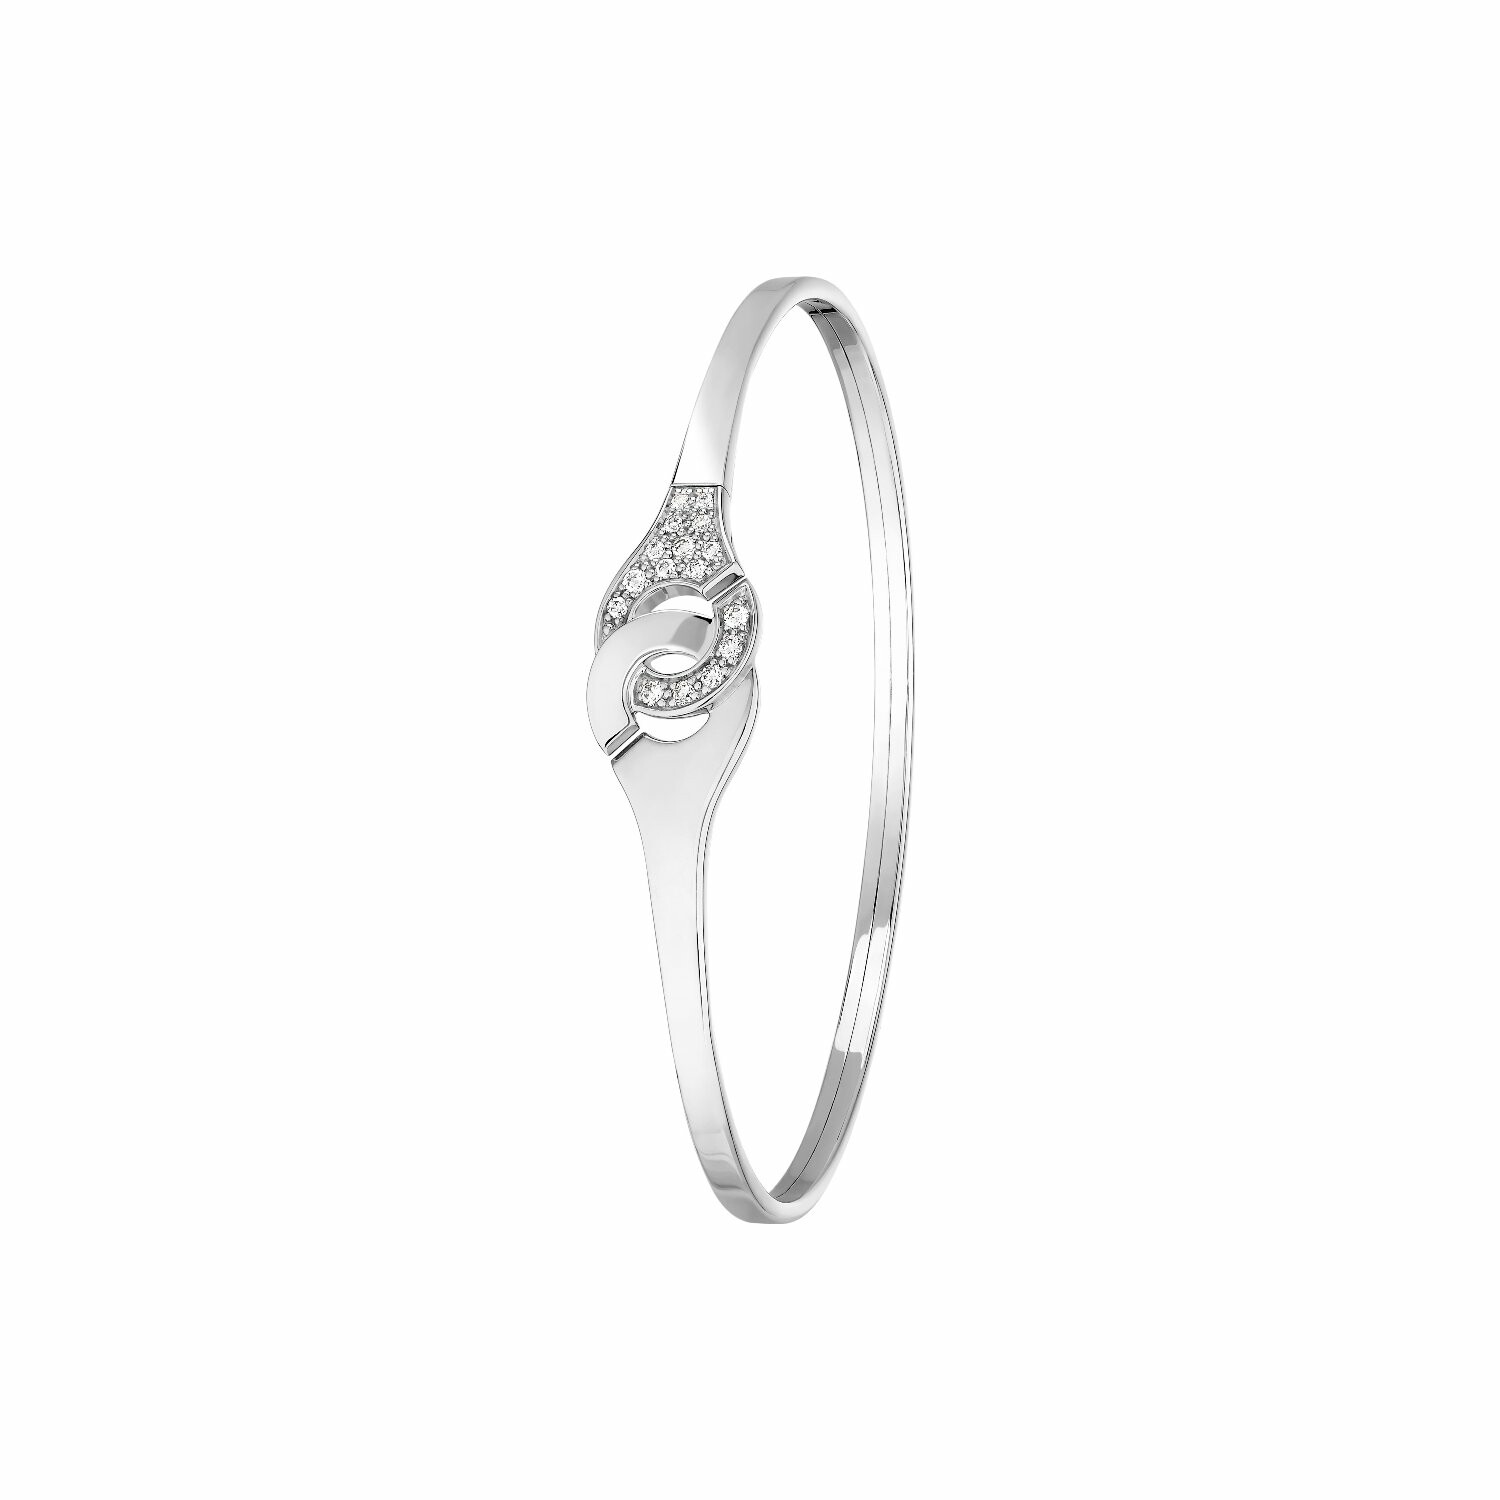 Bracelet Menottes dinh van en or blanc et diamants R10 vue 1